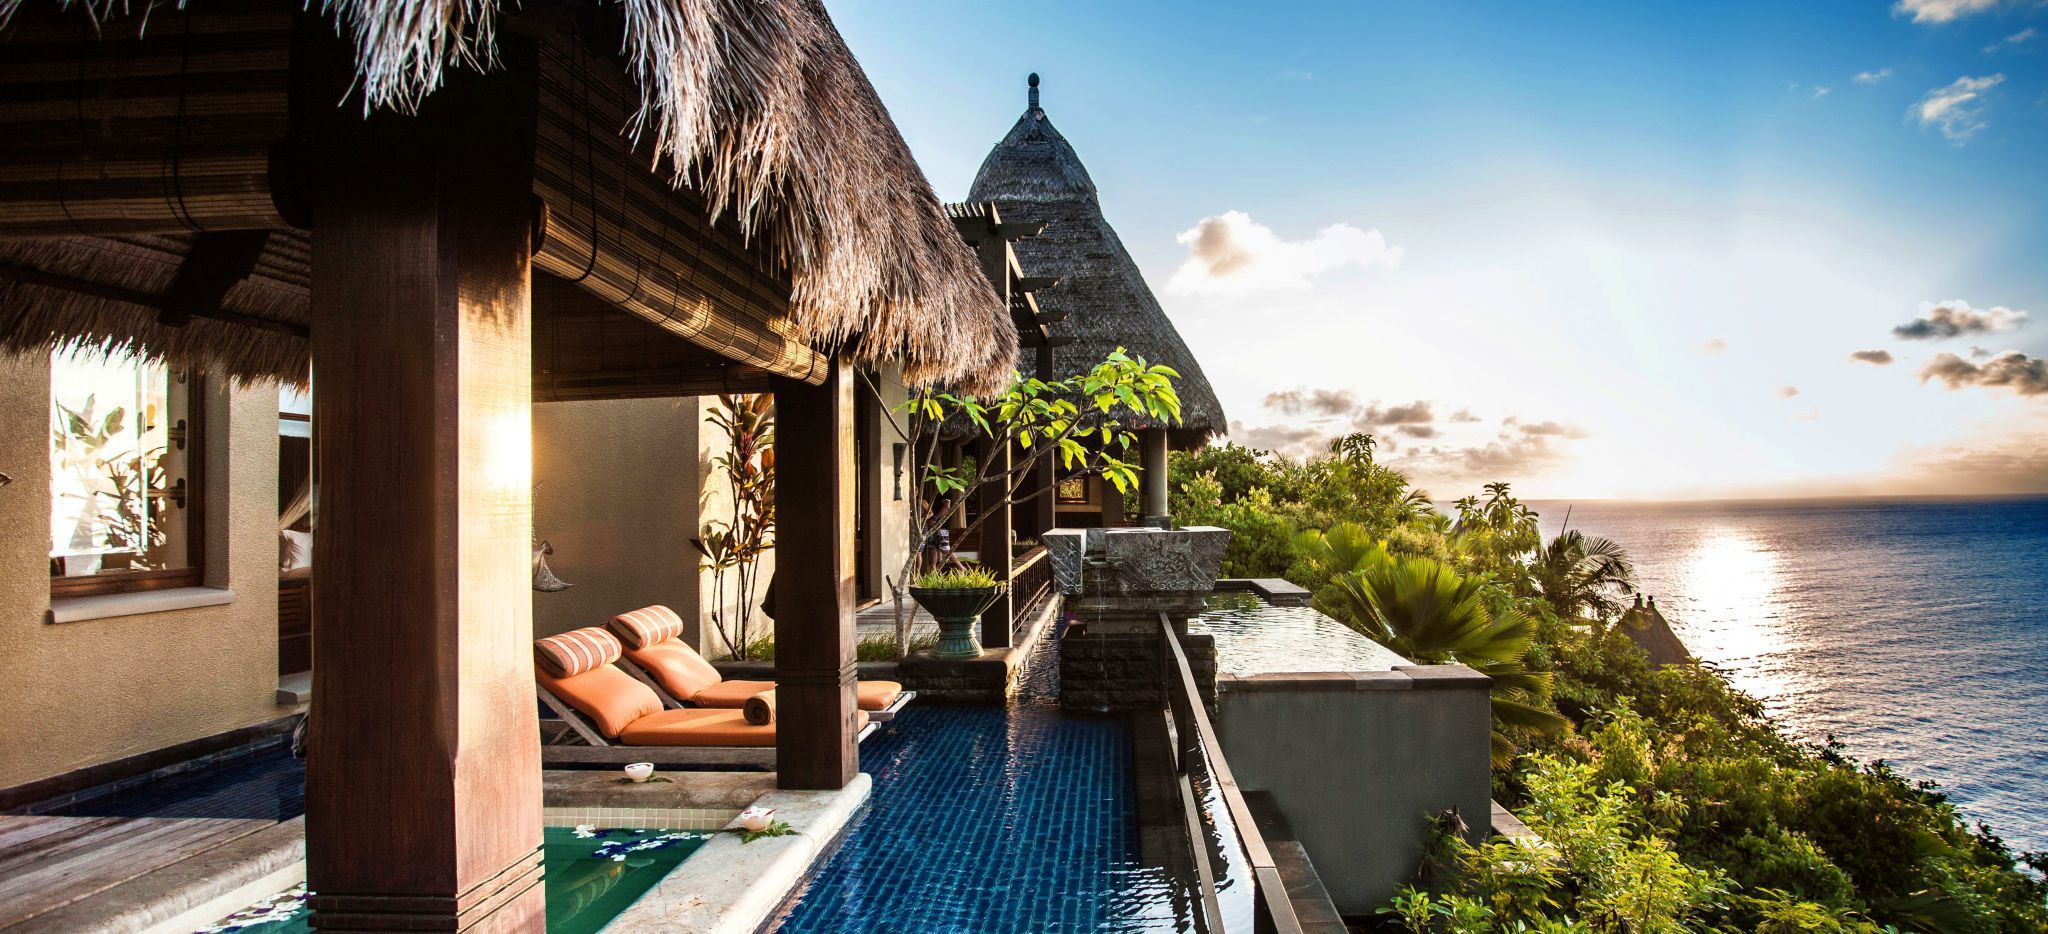 Der Blick auf eine Villa im Hotel Anantara Maia auf den Seychellen